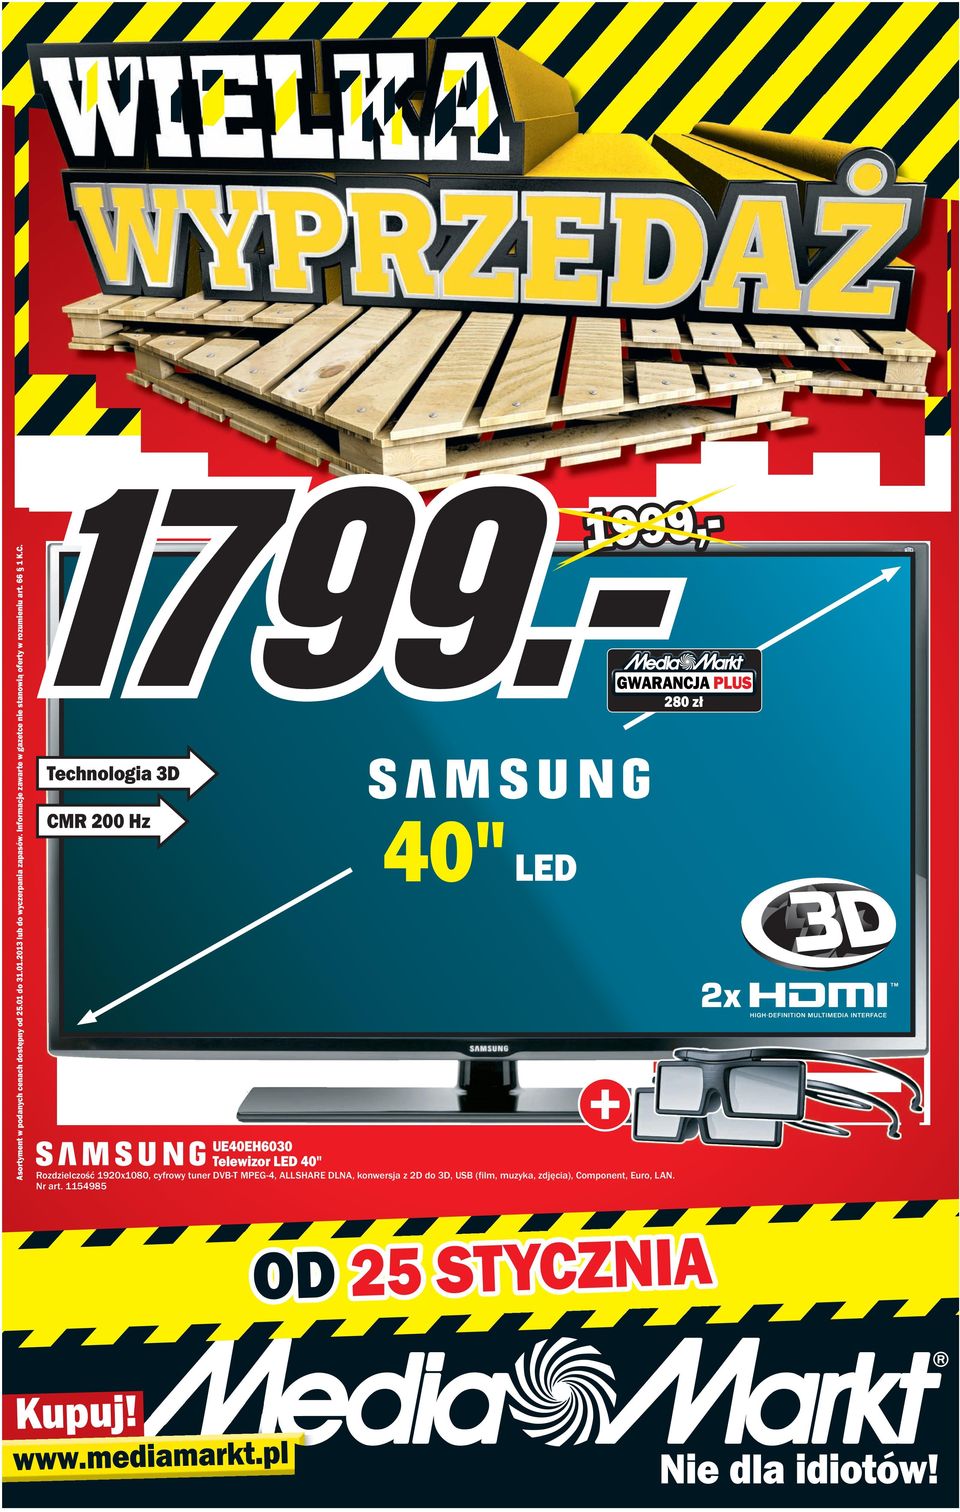 1999, 280 zł technologia 3D 40" ED CMR 200 Hz UE40EH6030 telewizor ED 40" Rozdzielczość 19201080, cyfrowy tuner